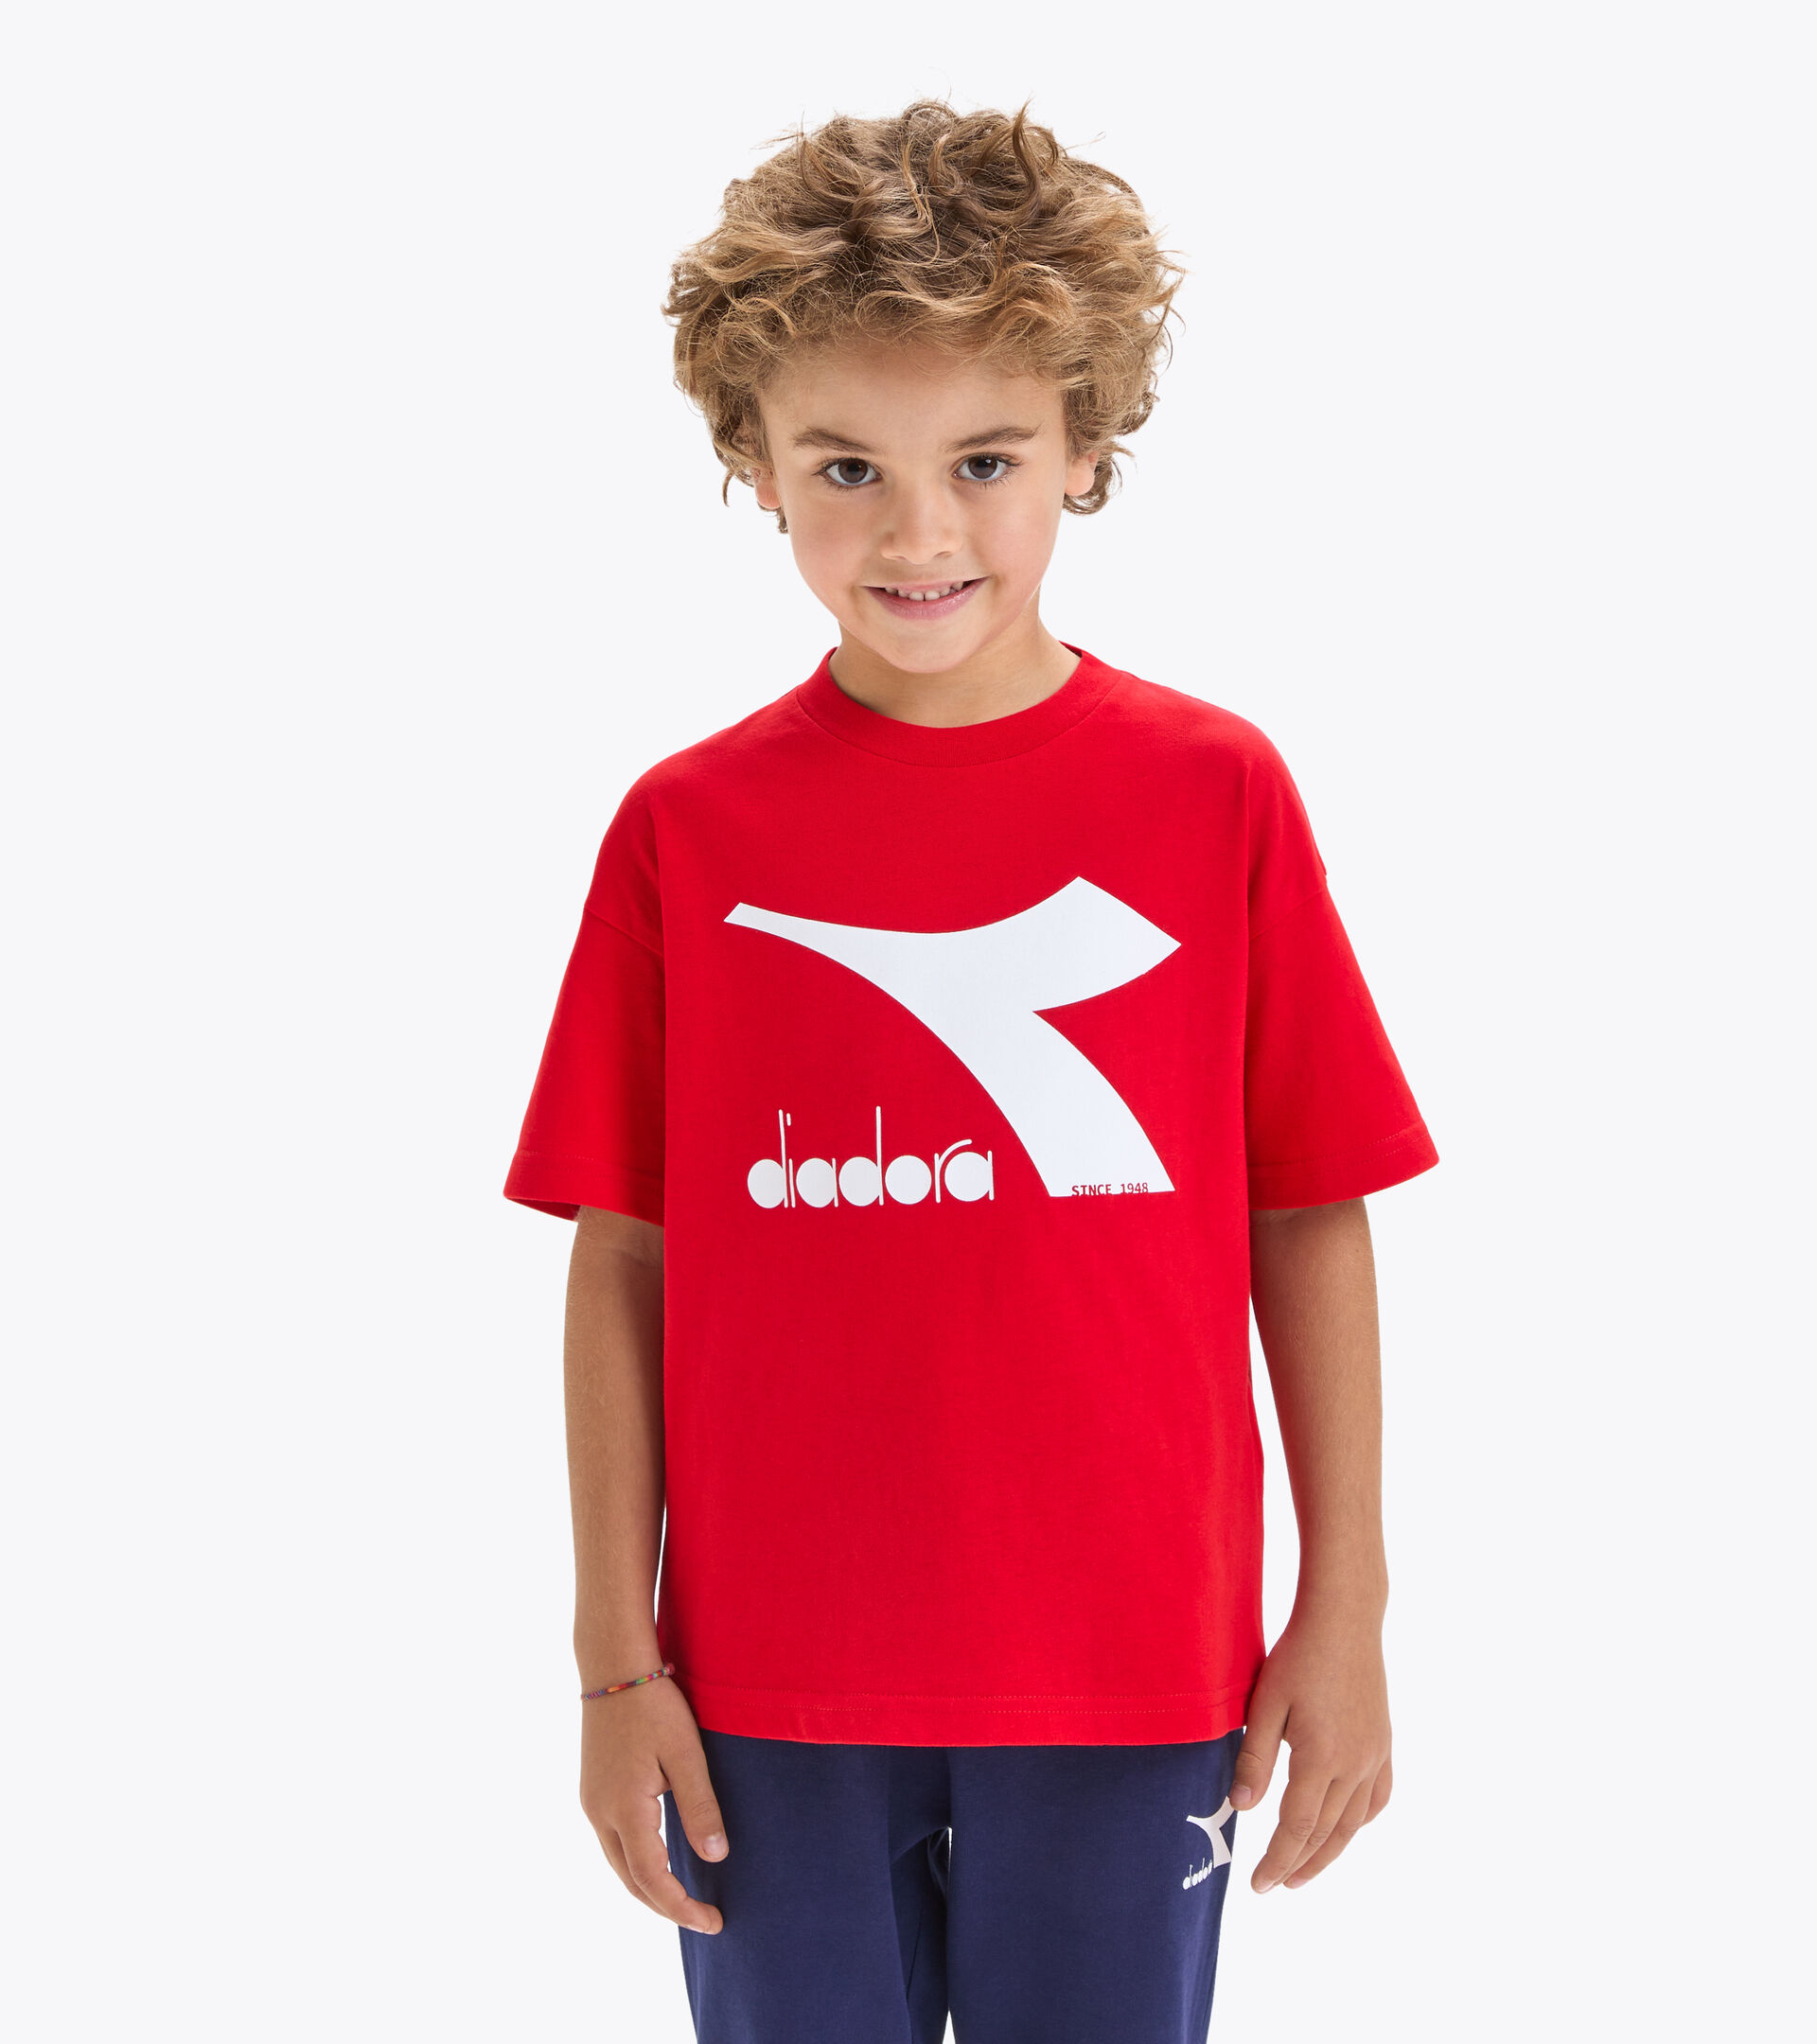 Sportliches T-Shirt - Kinder
 JU.T-SHIRT SS BL RISIKOREICH ROT - Diadora